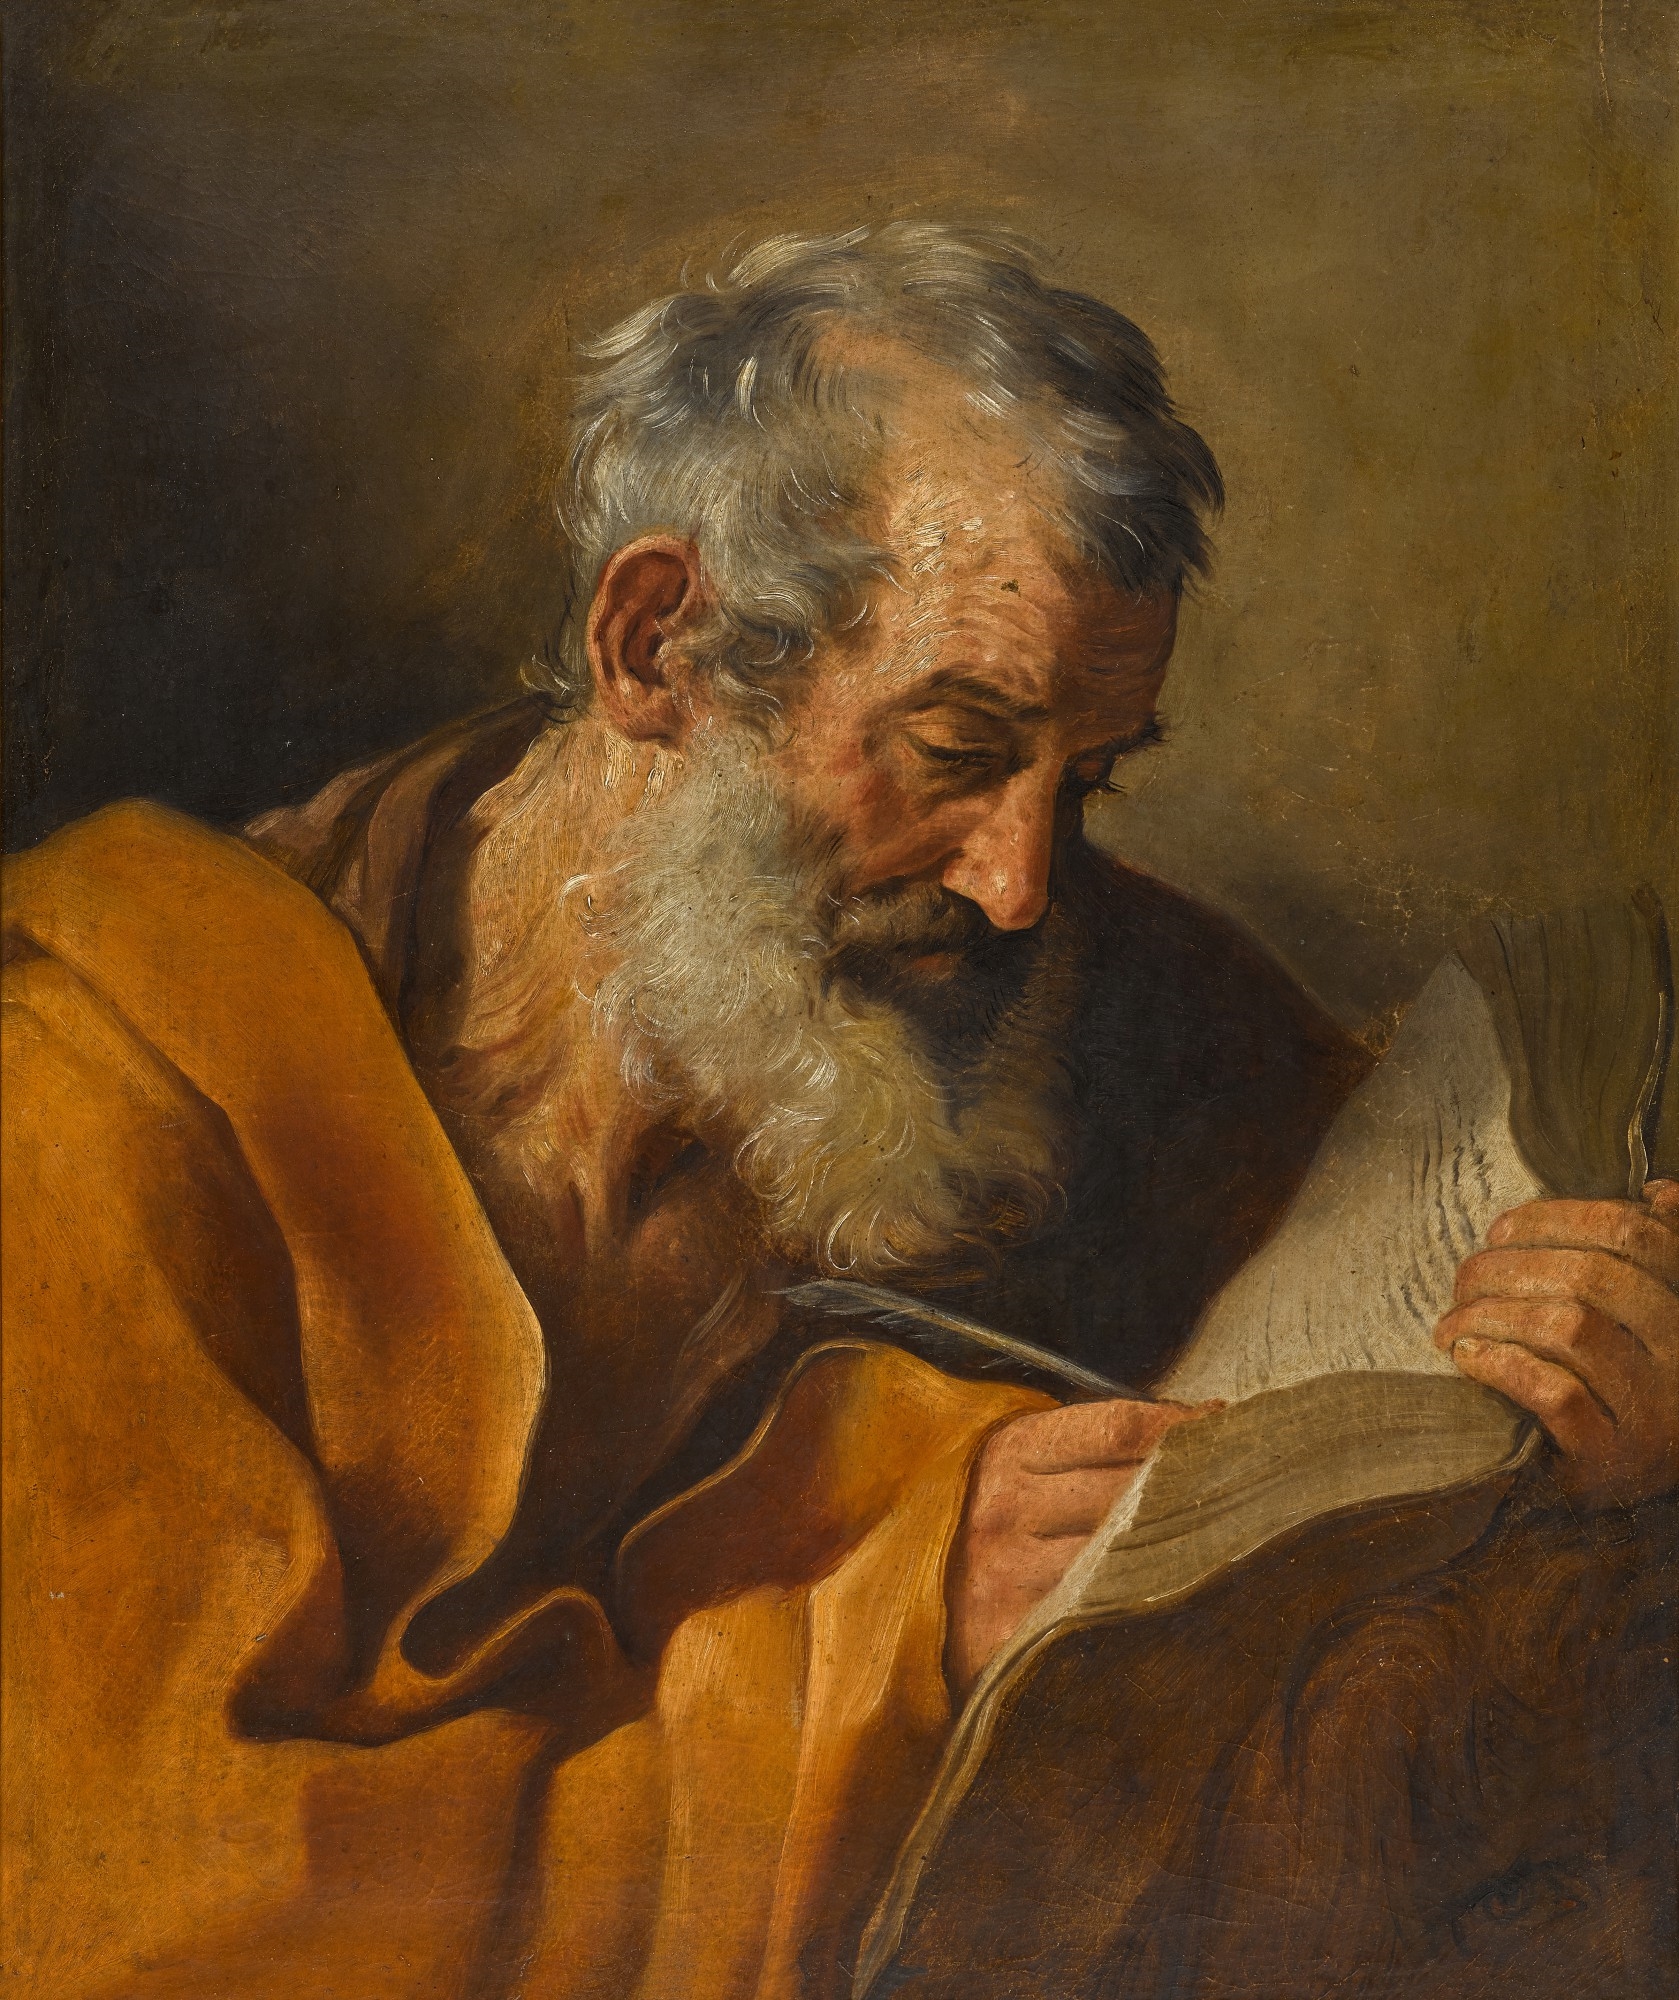 Ngày 25/04: Thánh sử Marcô, tác giả sách Tin mừng